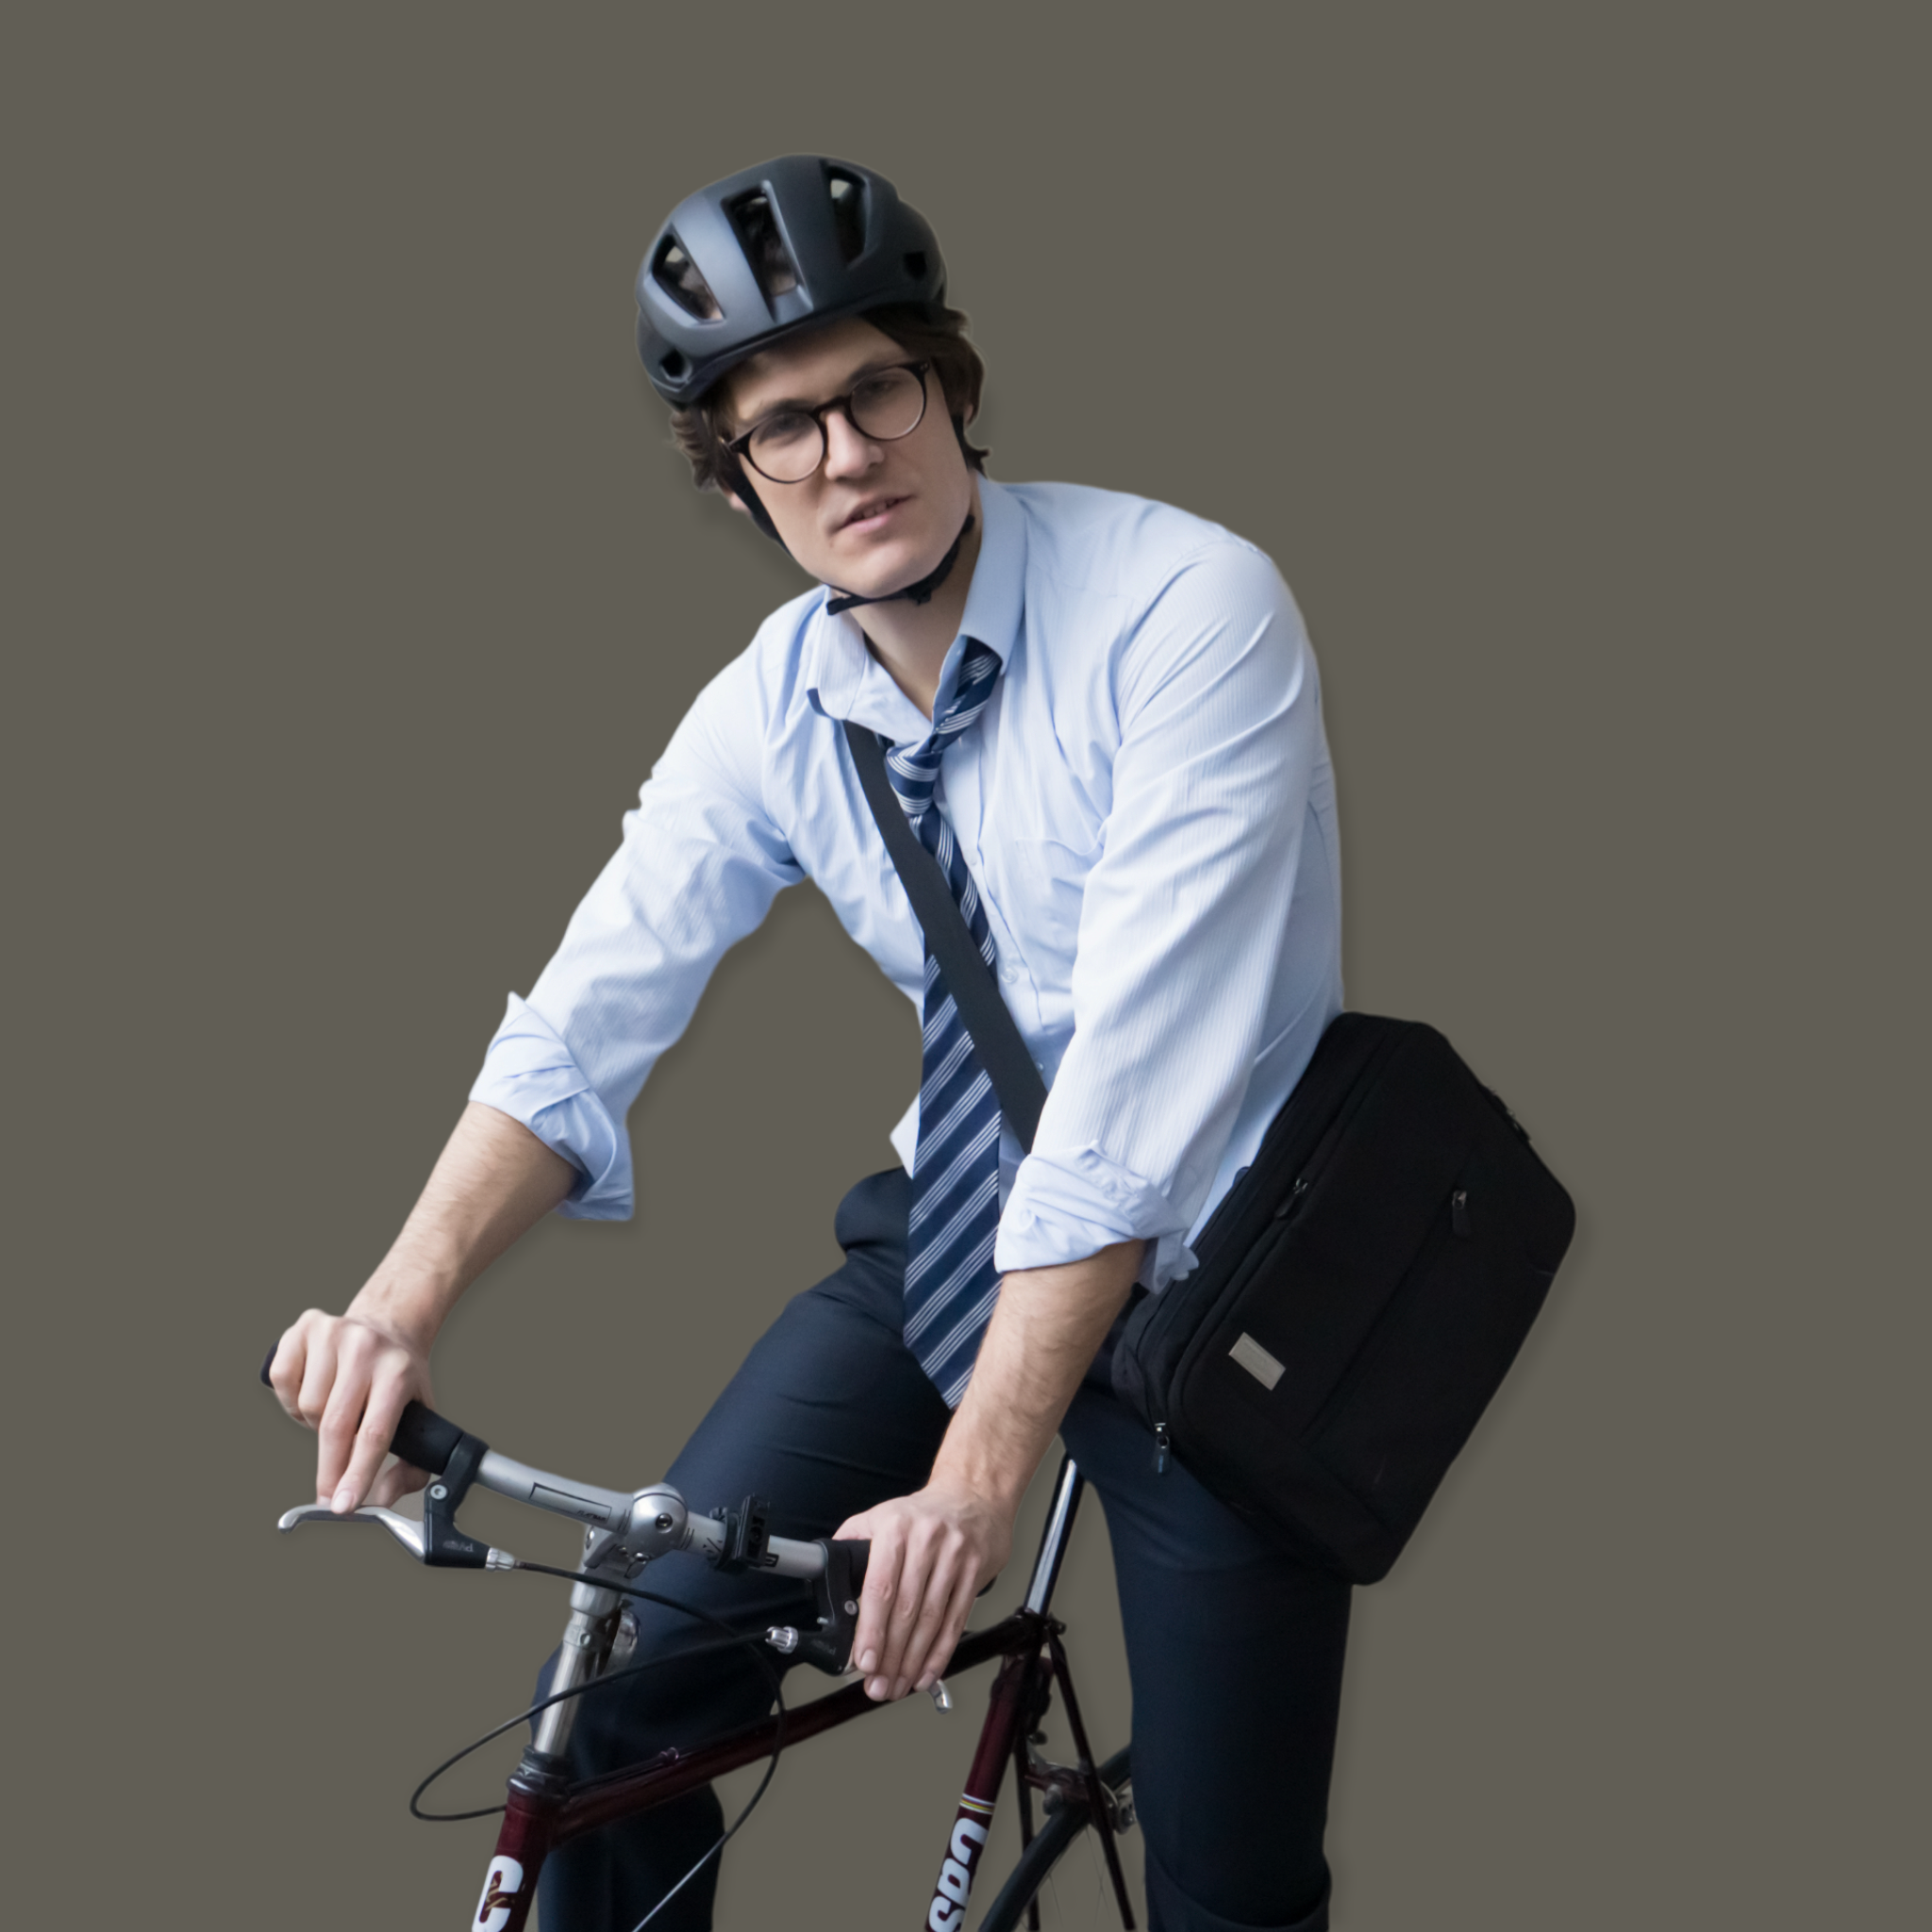 Mann mit Anzug trägt Burner Helmet nachhaltigen Fahrradhelm